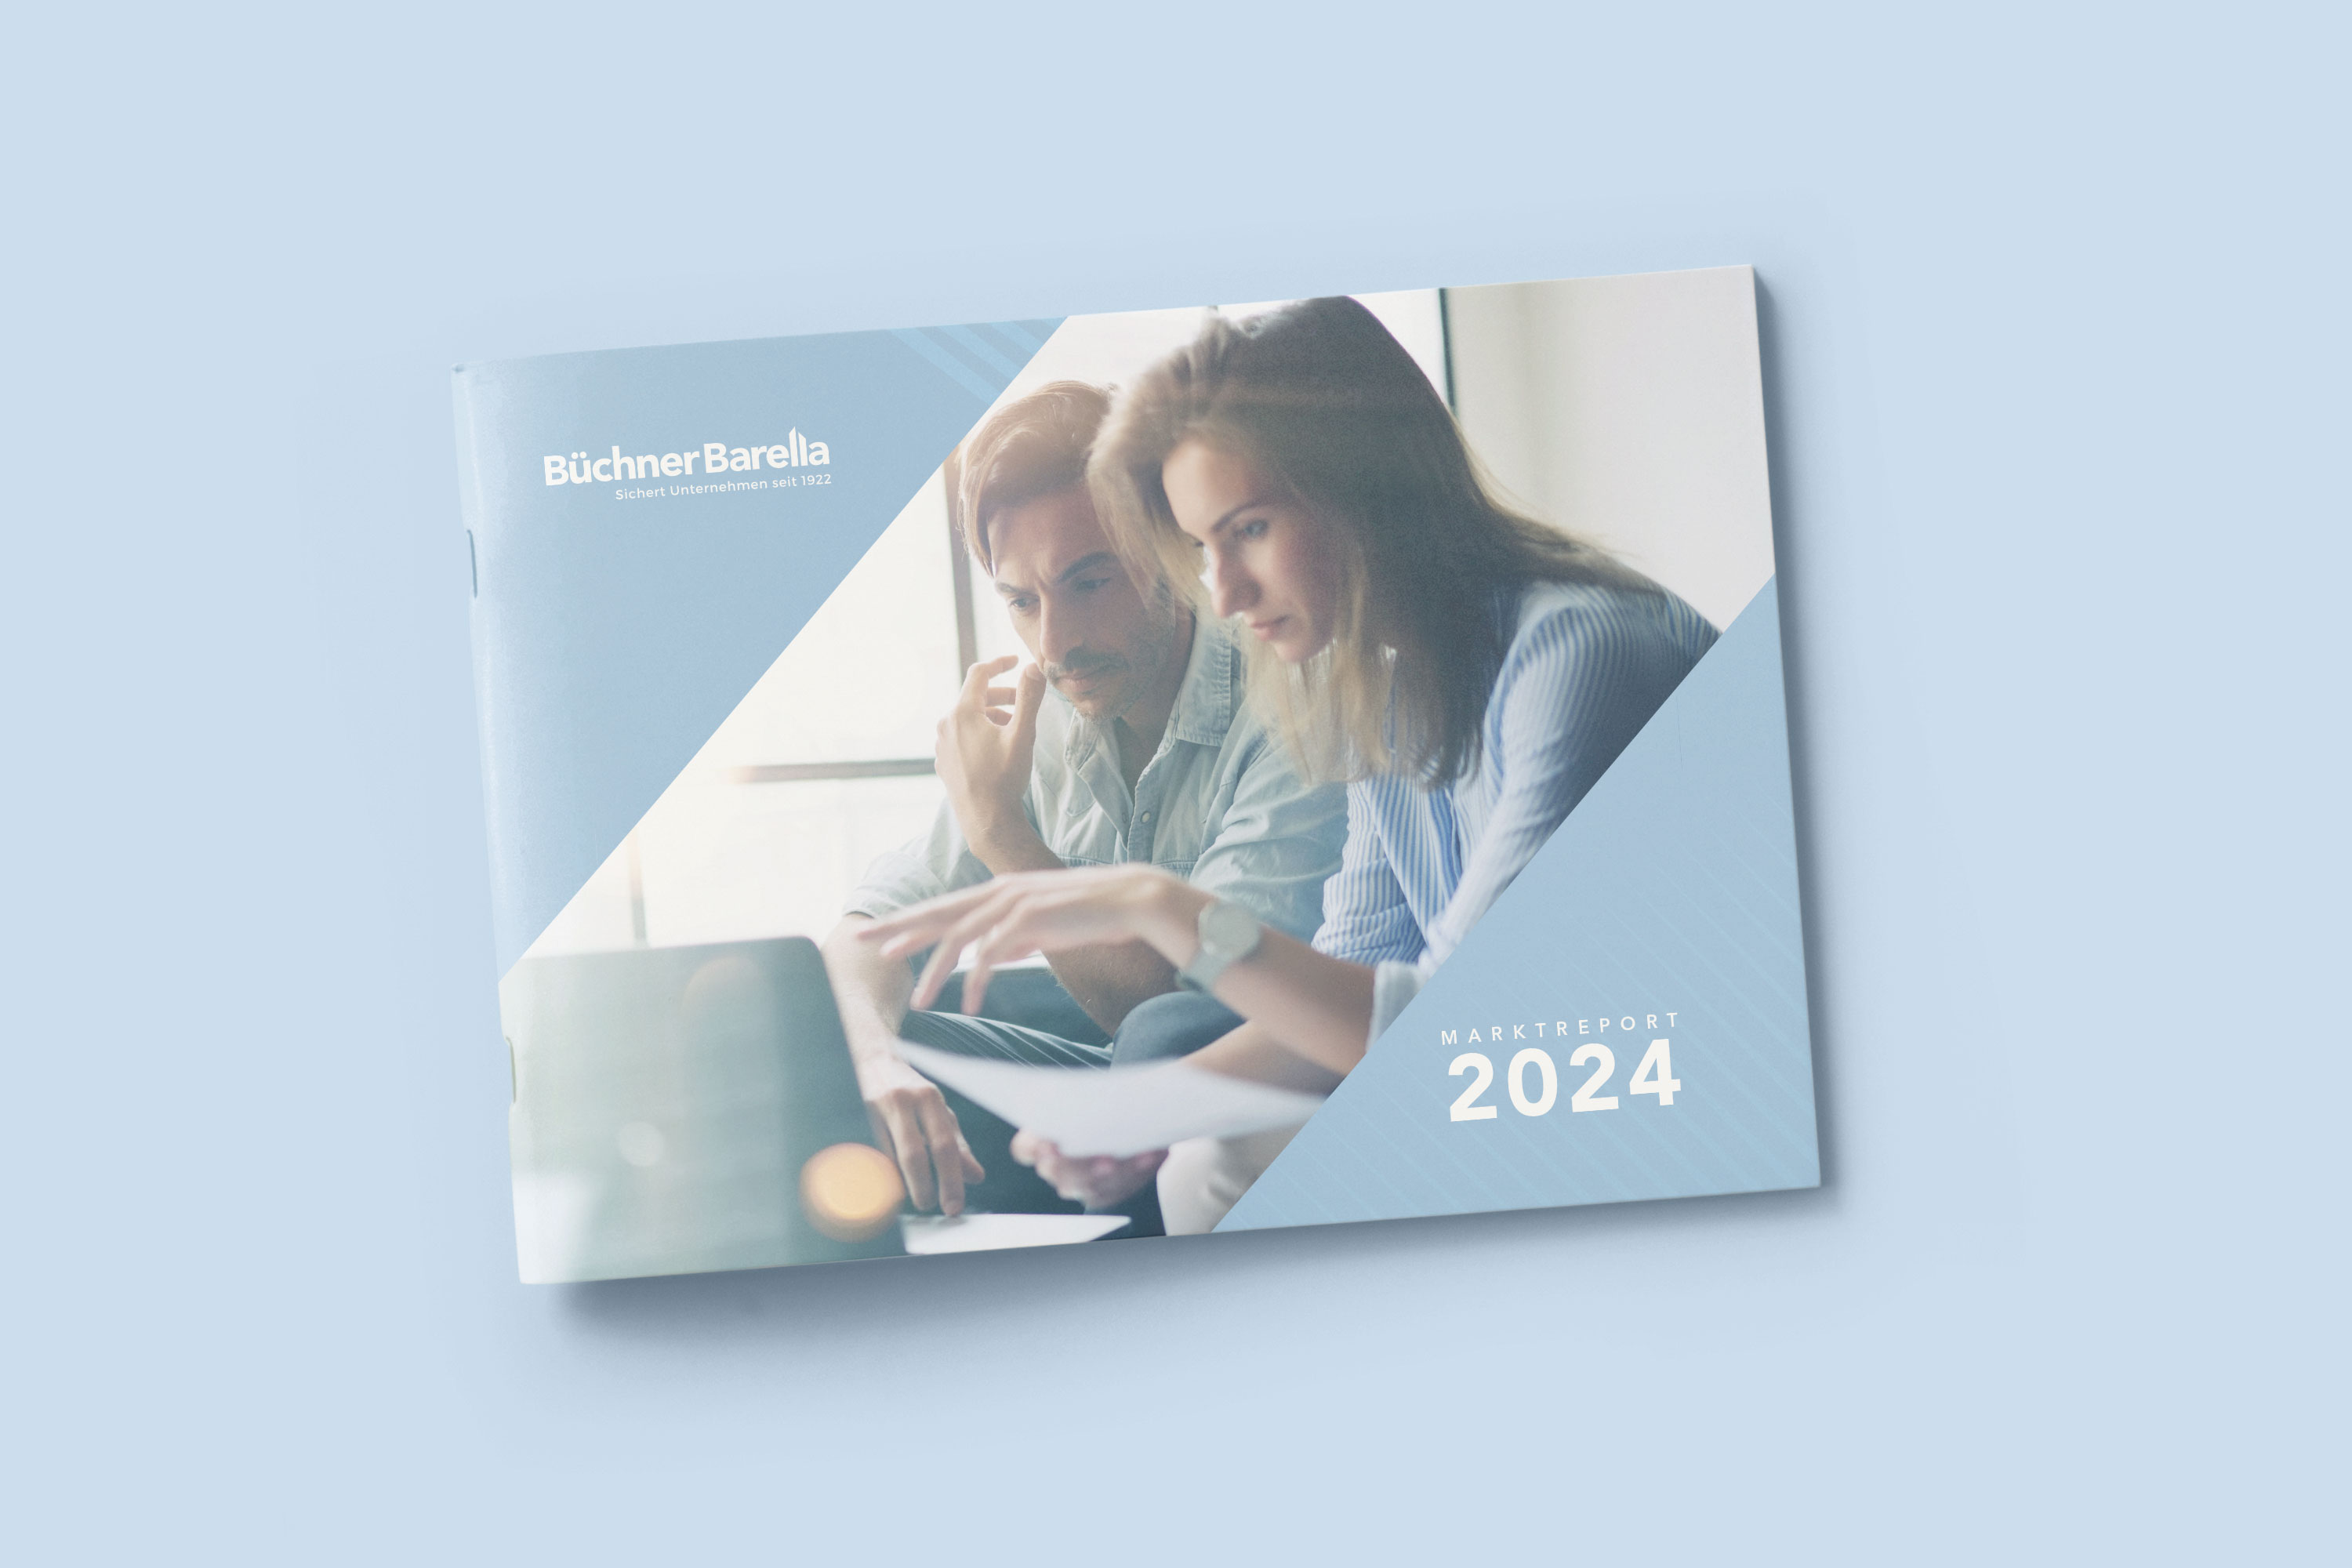 BüchnerBarella Marktreport 2024